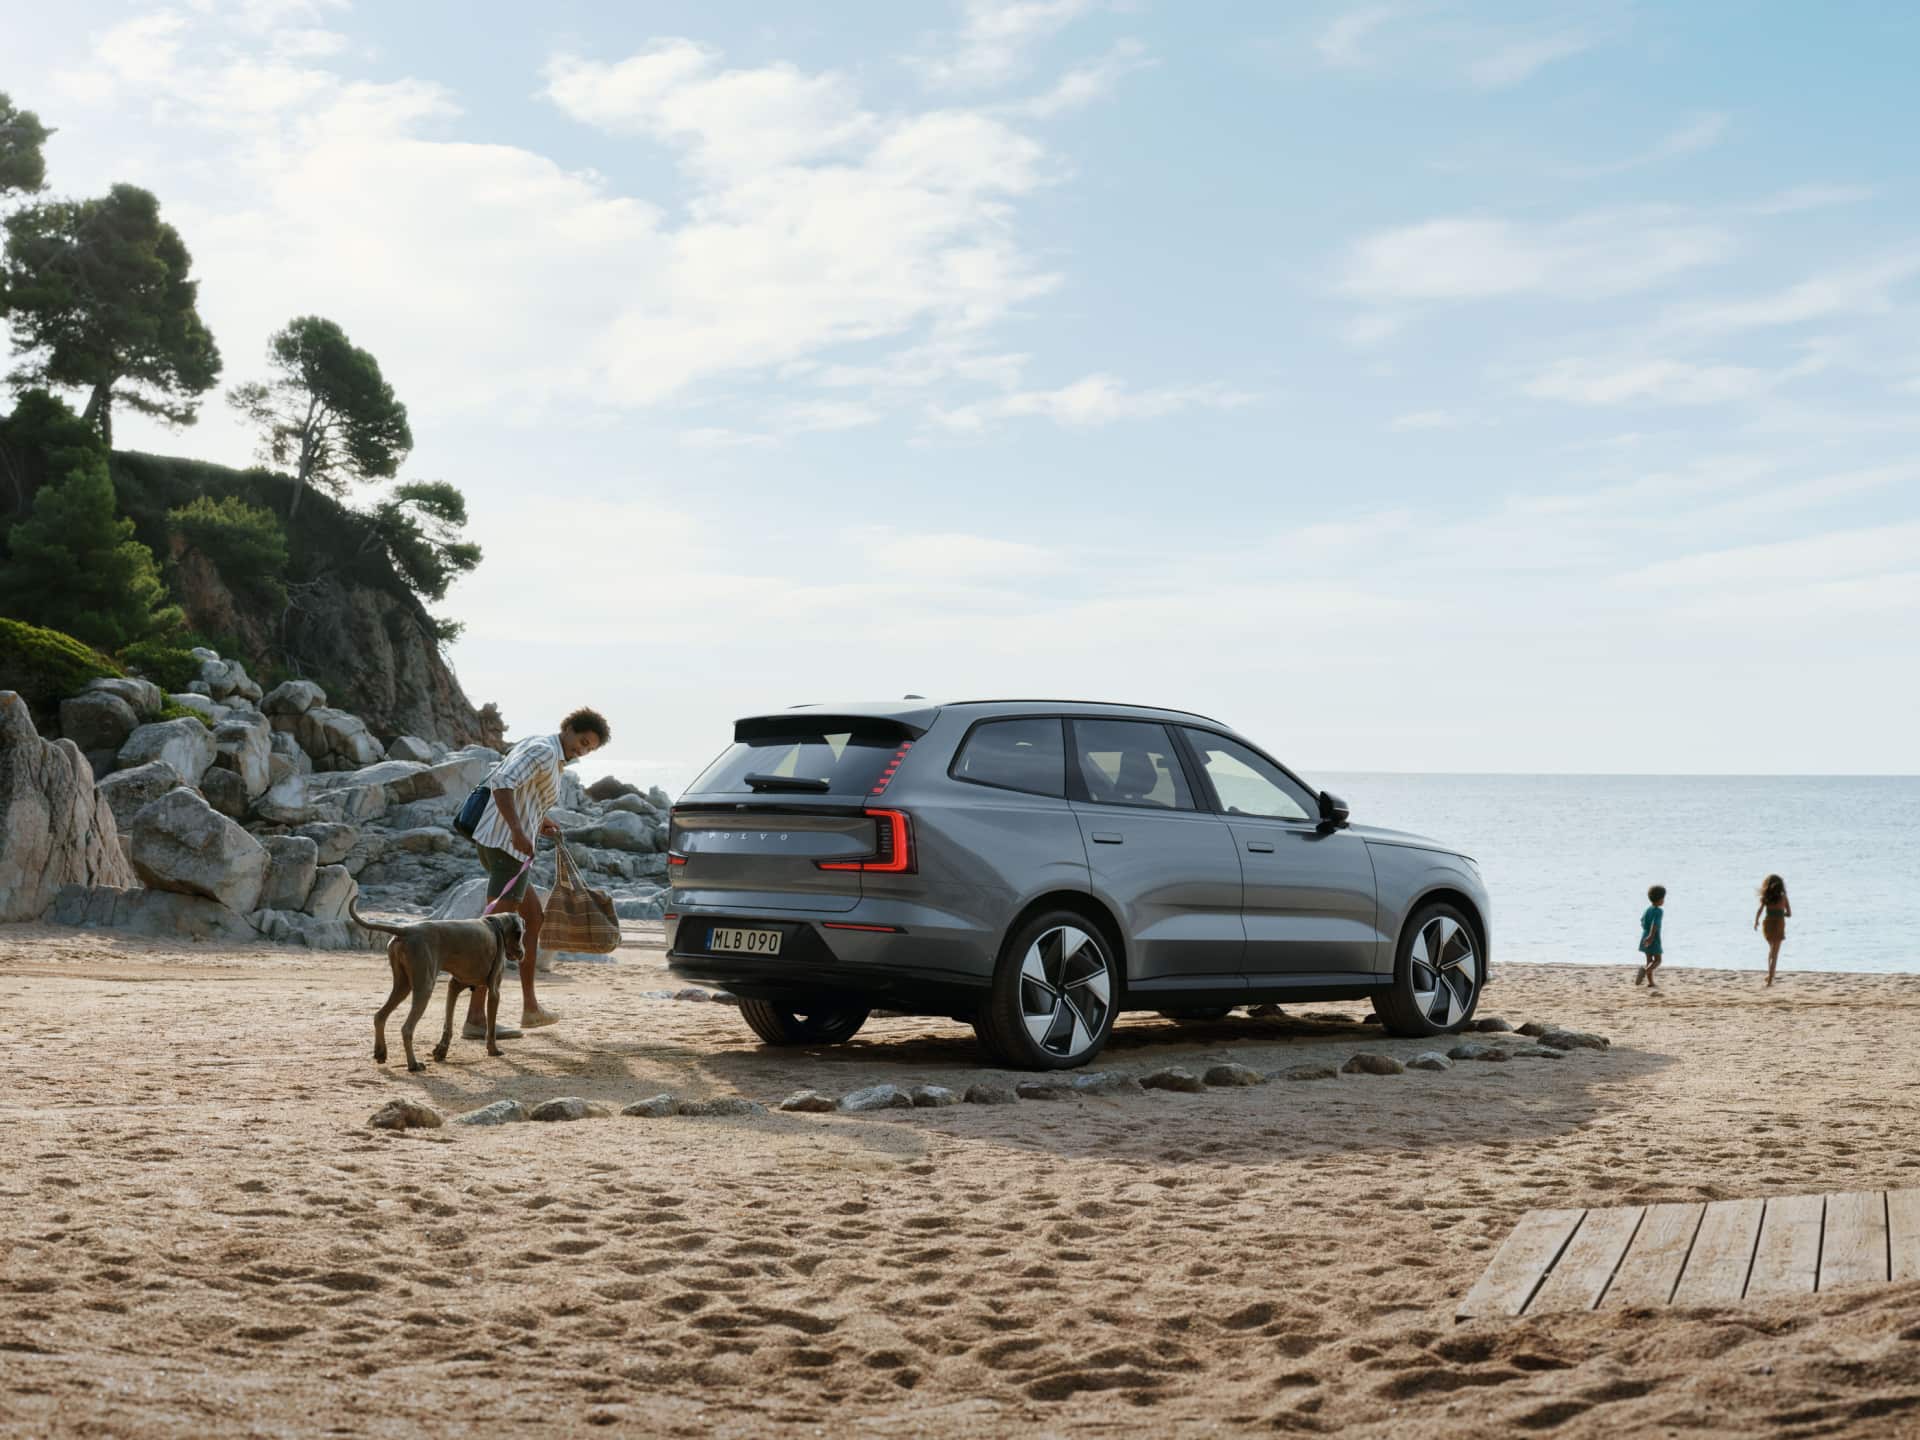 ภาพแสดงชายคนหนึ่งและสุนัขกําลังเดินอยู่ข้าง Volvo EX90 ที่จอดอยู่บนชายหาด